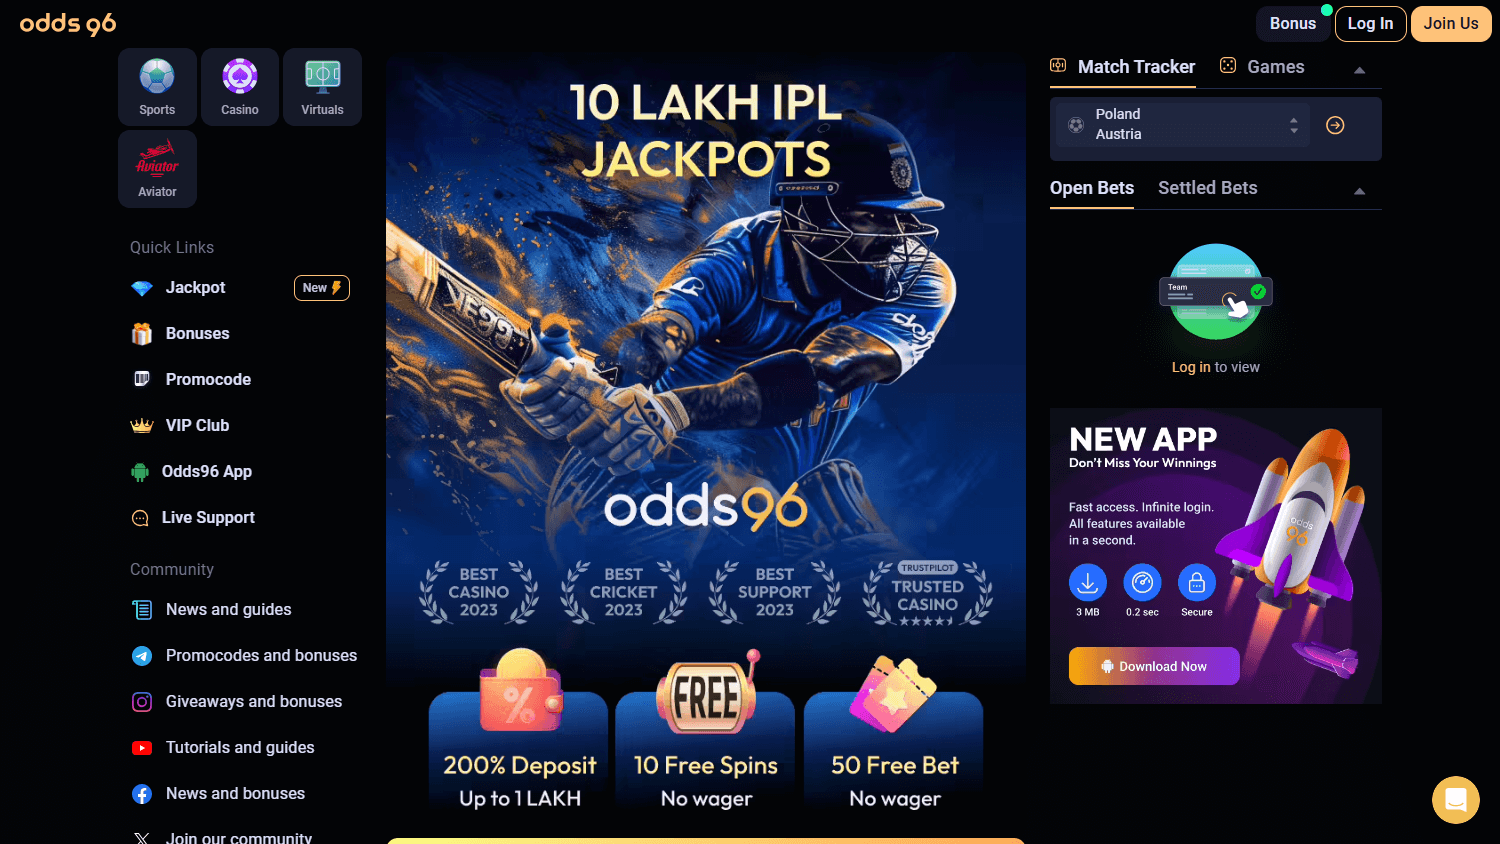 odds96_casino_homepage_desktop